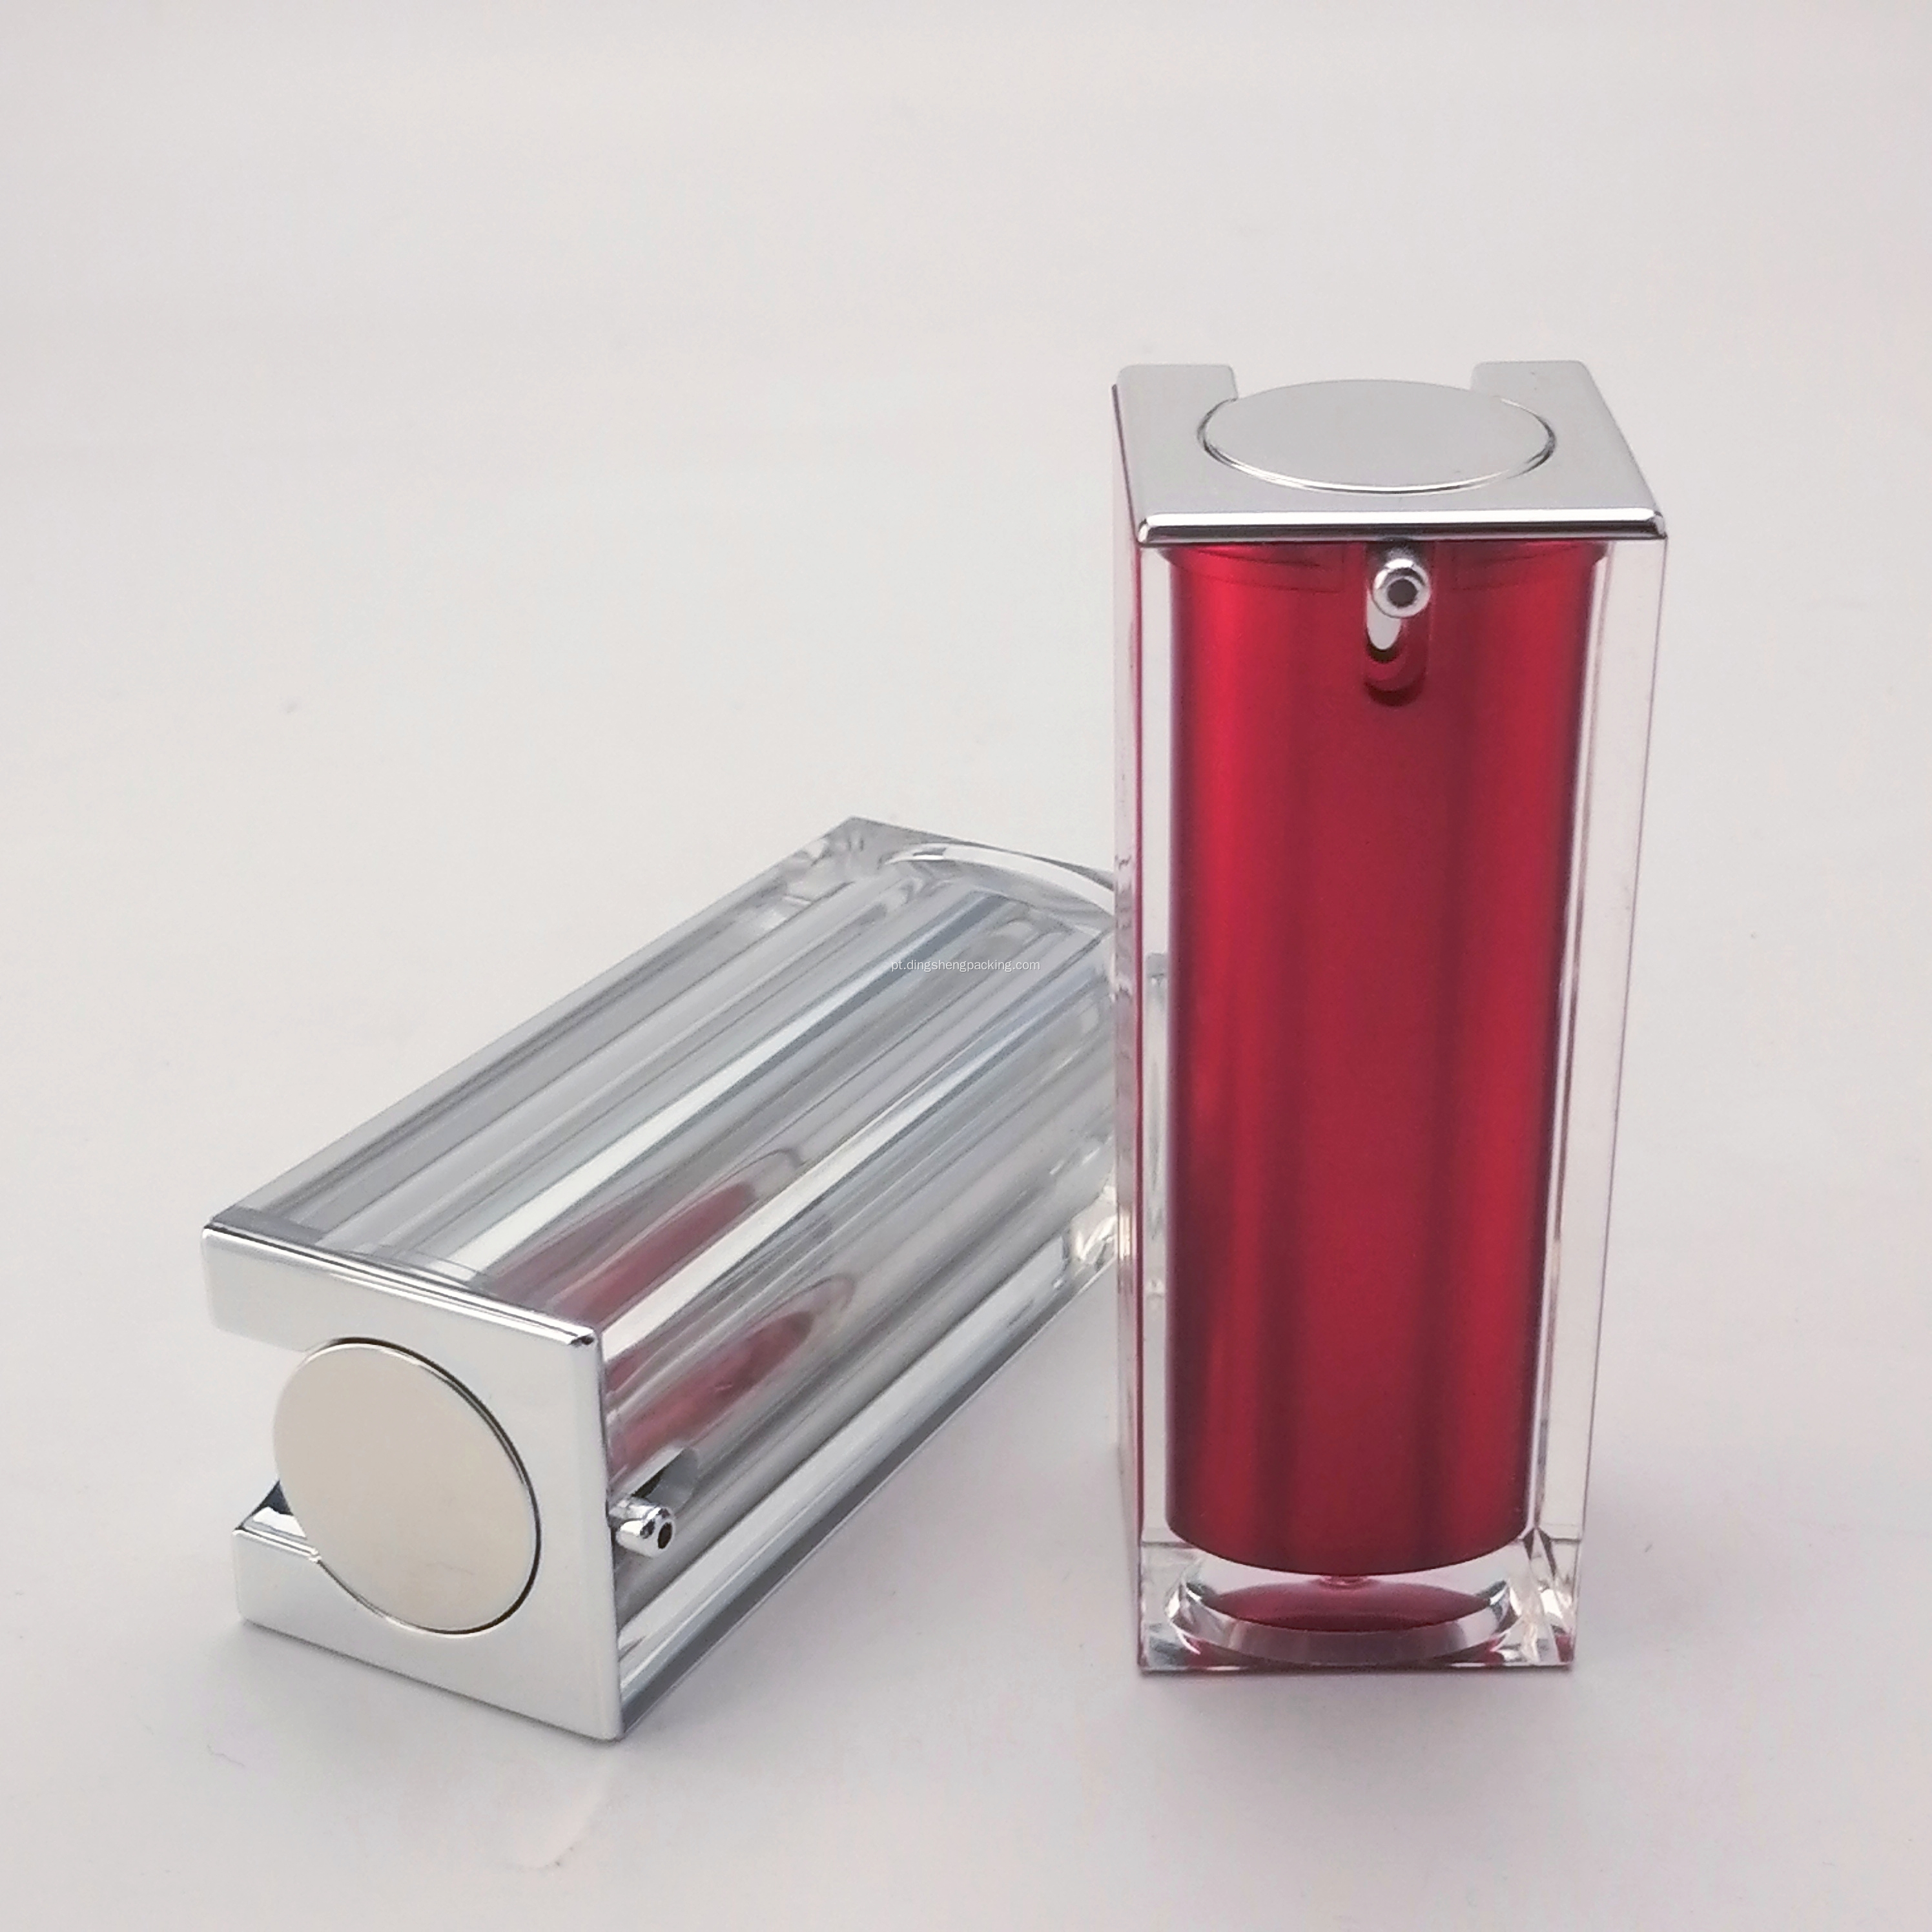 Pacote de frasco de loção cosmética para prensagem de frasco plástico de luxo com quadrado vermelho